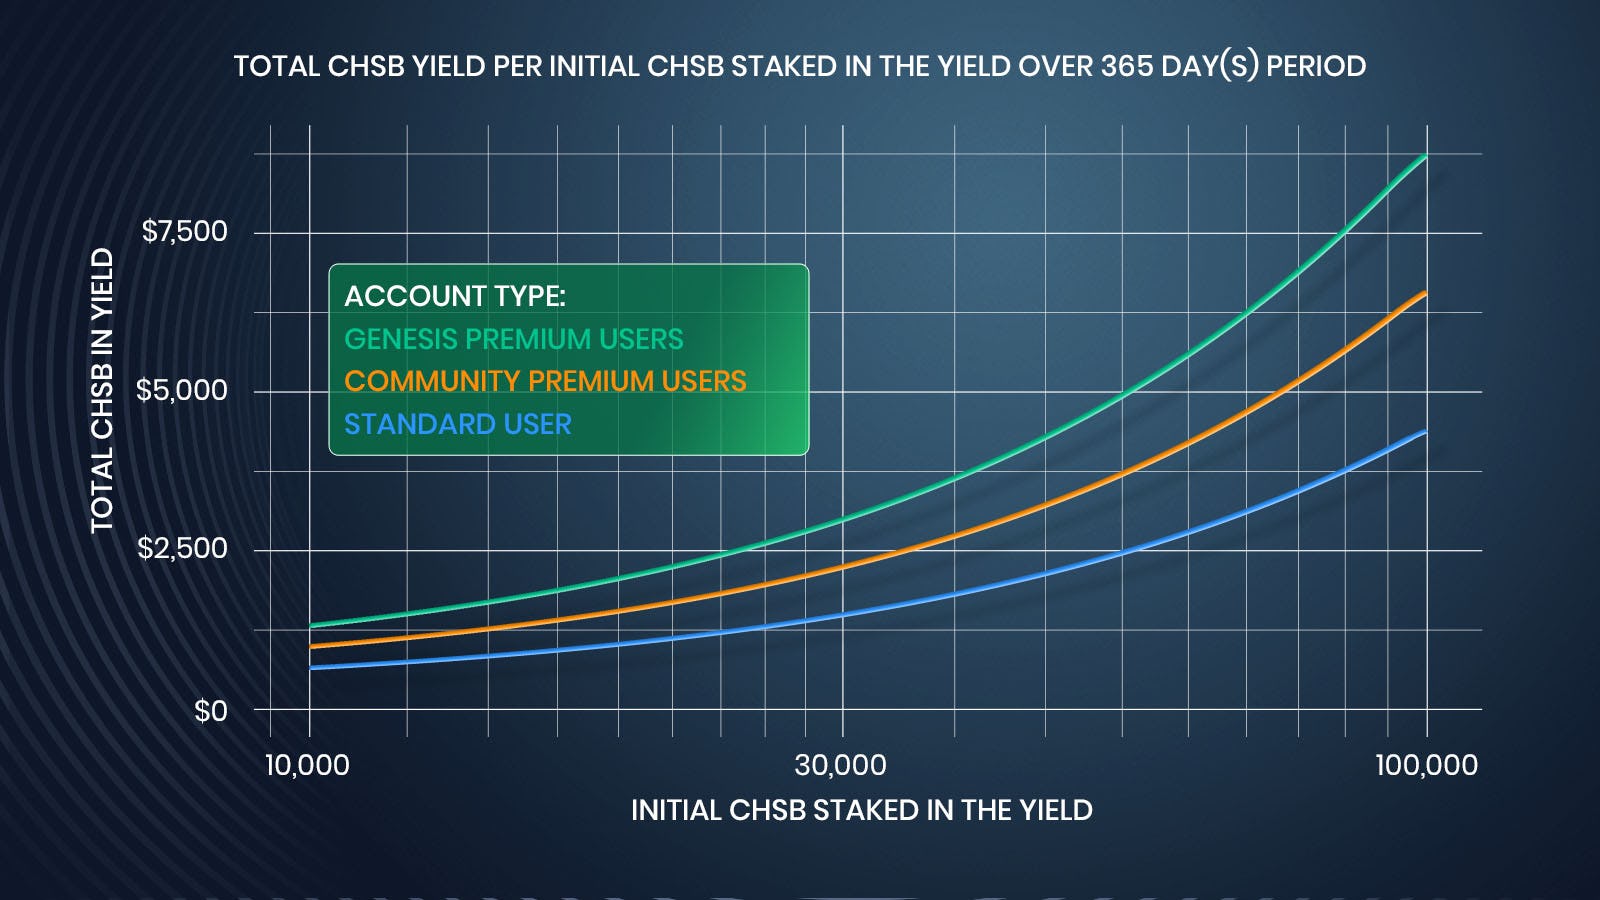 CHSB im Yield über eine 365 Tage-Periode